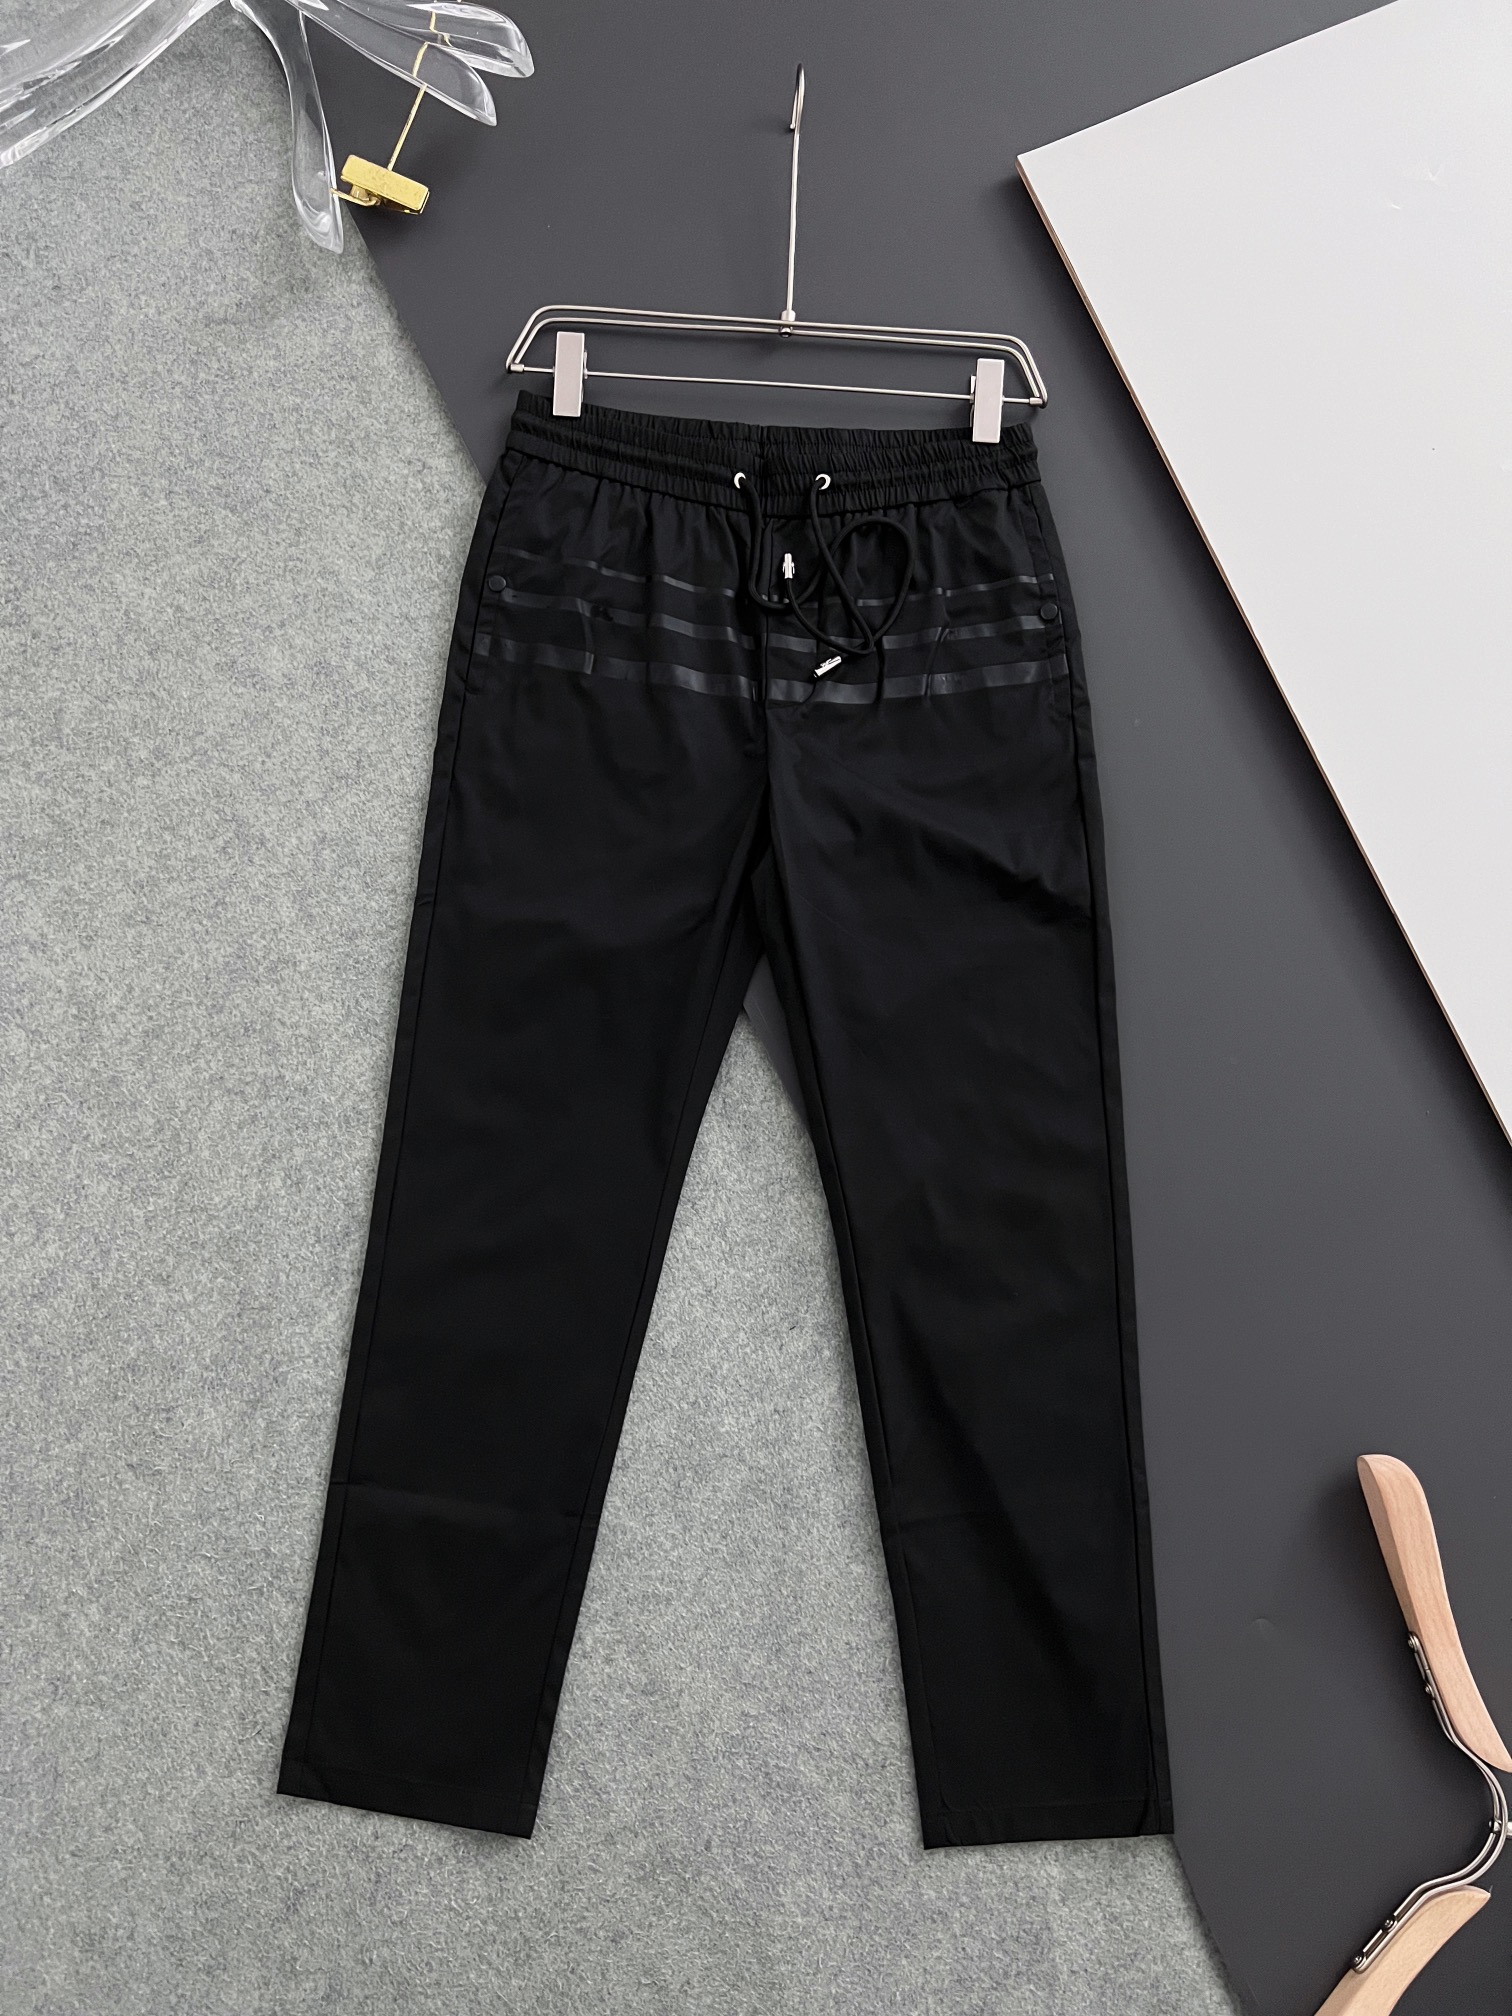 חנות מעצבים סיטונאית
 פראדה חלק עליון
 בגדים מכנסיים ומכנסיים טרוזר שחור חאקי. הדפסה גברים קוטן אוסף האביב/הקיץ אופנה רגיל